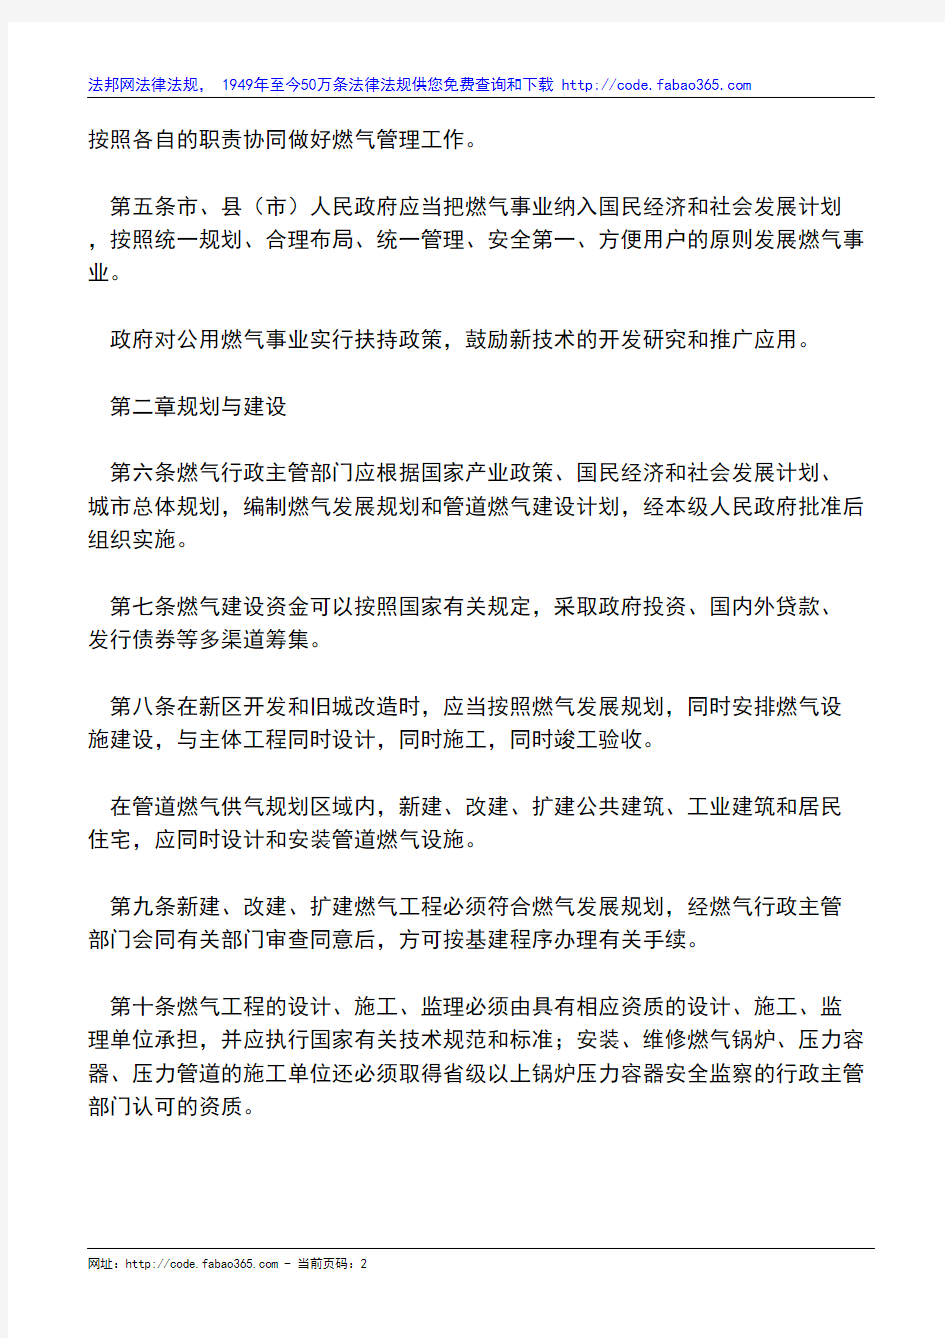 杭州市燃气管理条例